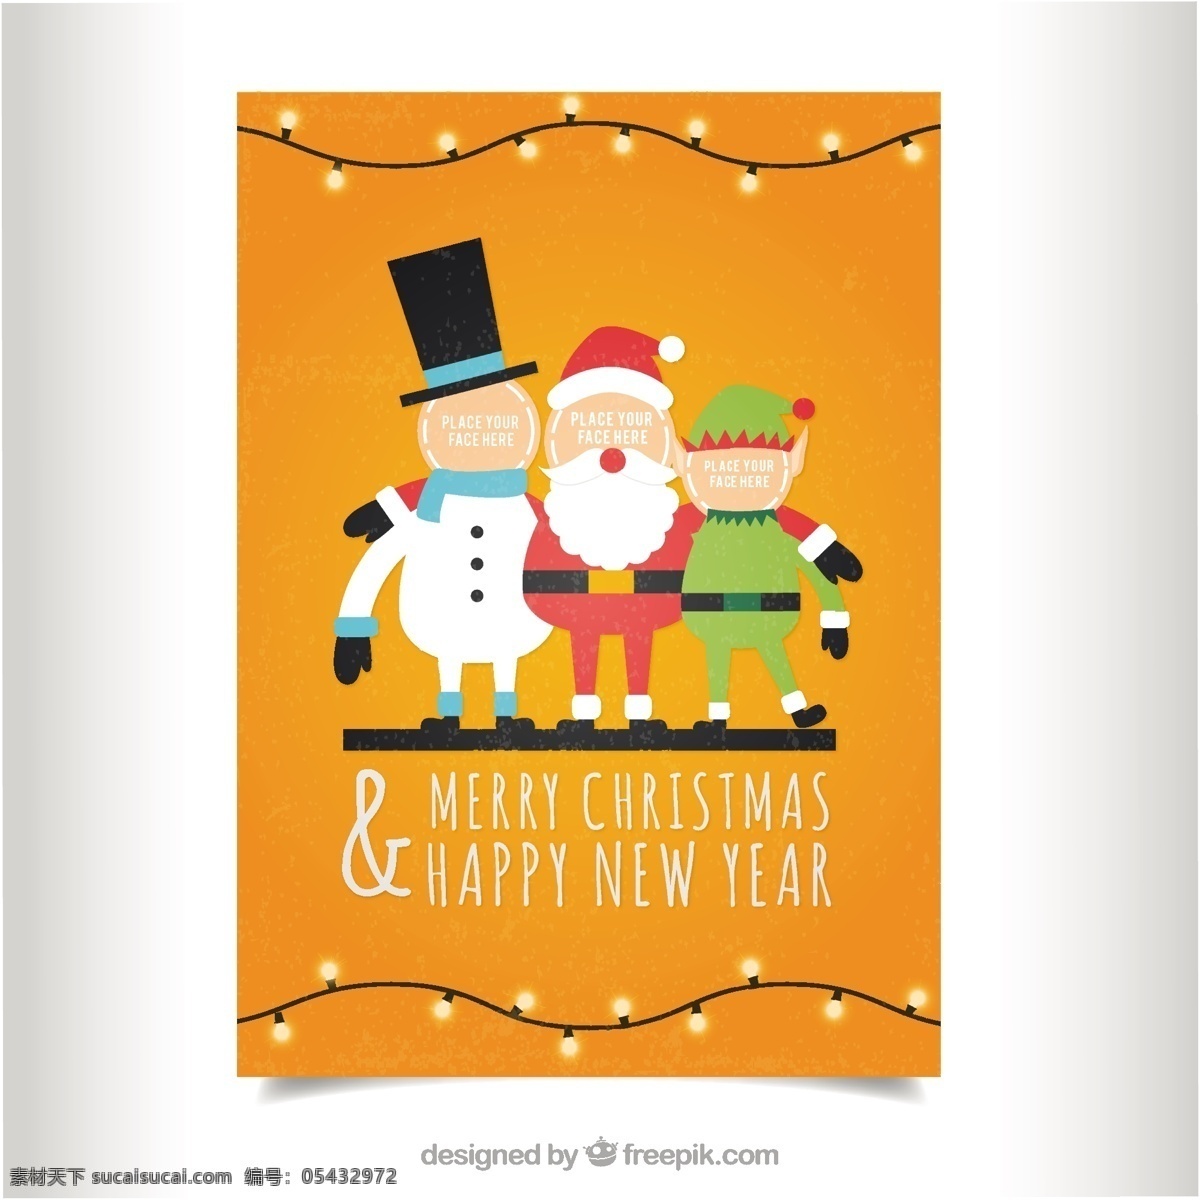 橙色的圣诞卡 圣诞卡 新年 快乐的模板 圣诞快乐 冬天快乐 圣诞老人 克劳斯 圣诞 庆祝 橙色的 新的 父亲的节日 堆雪人 年 节日快乐 白色